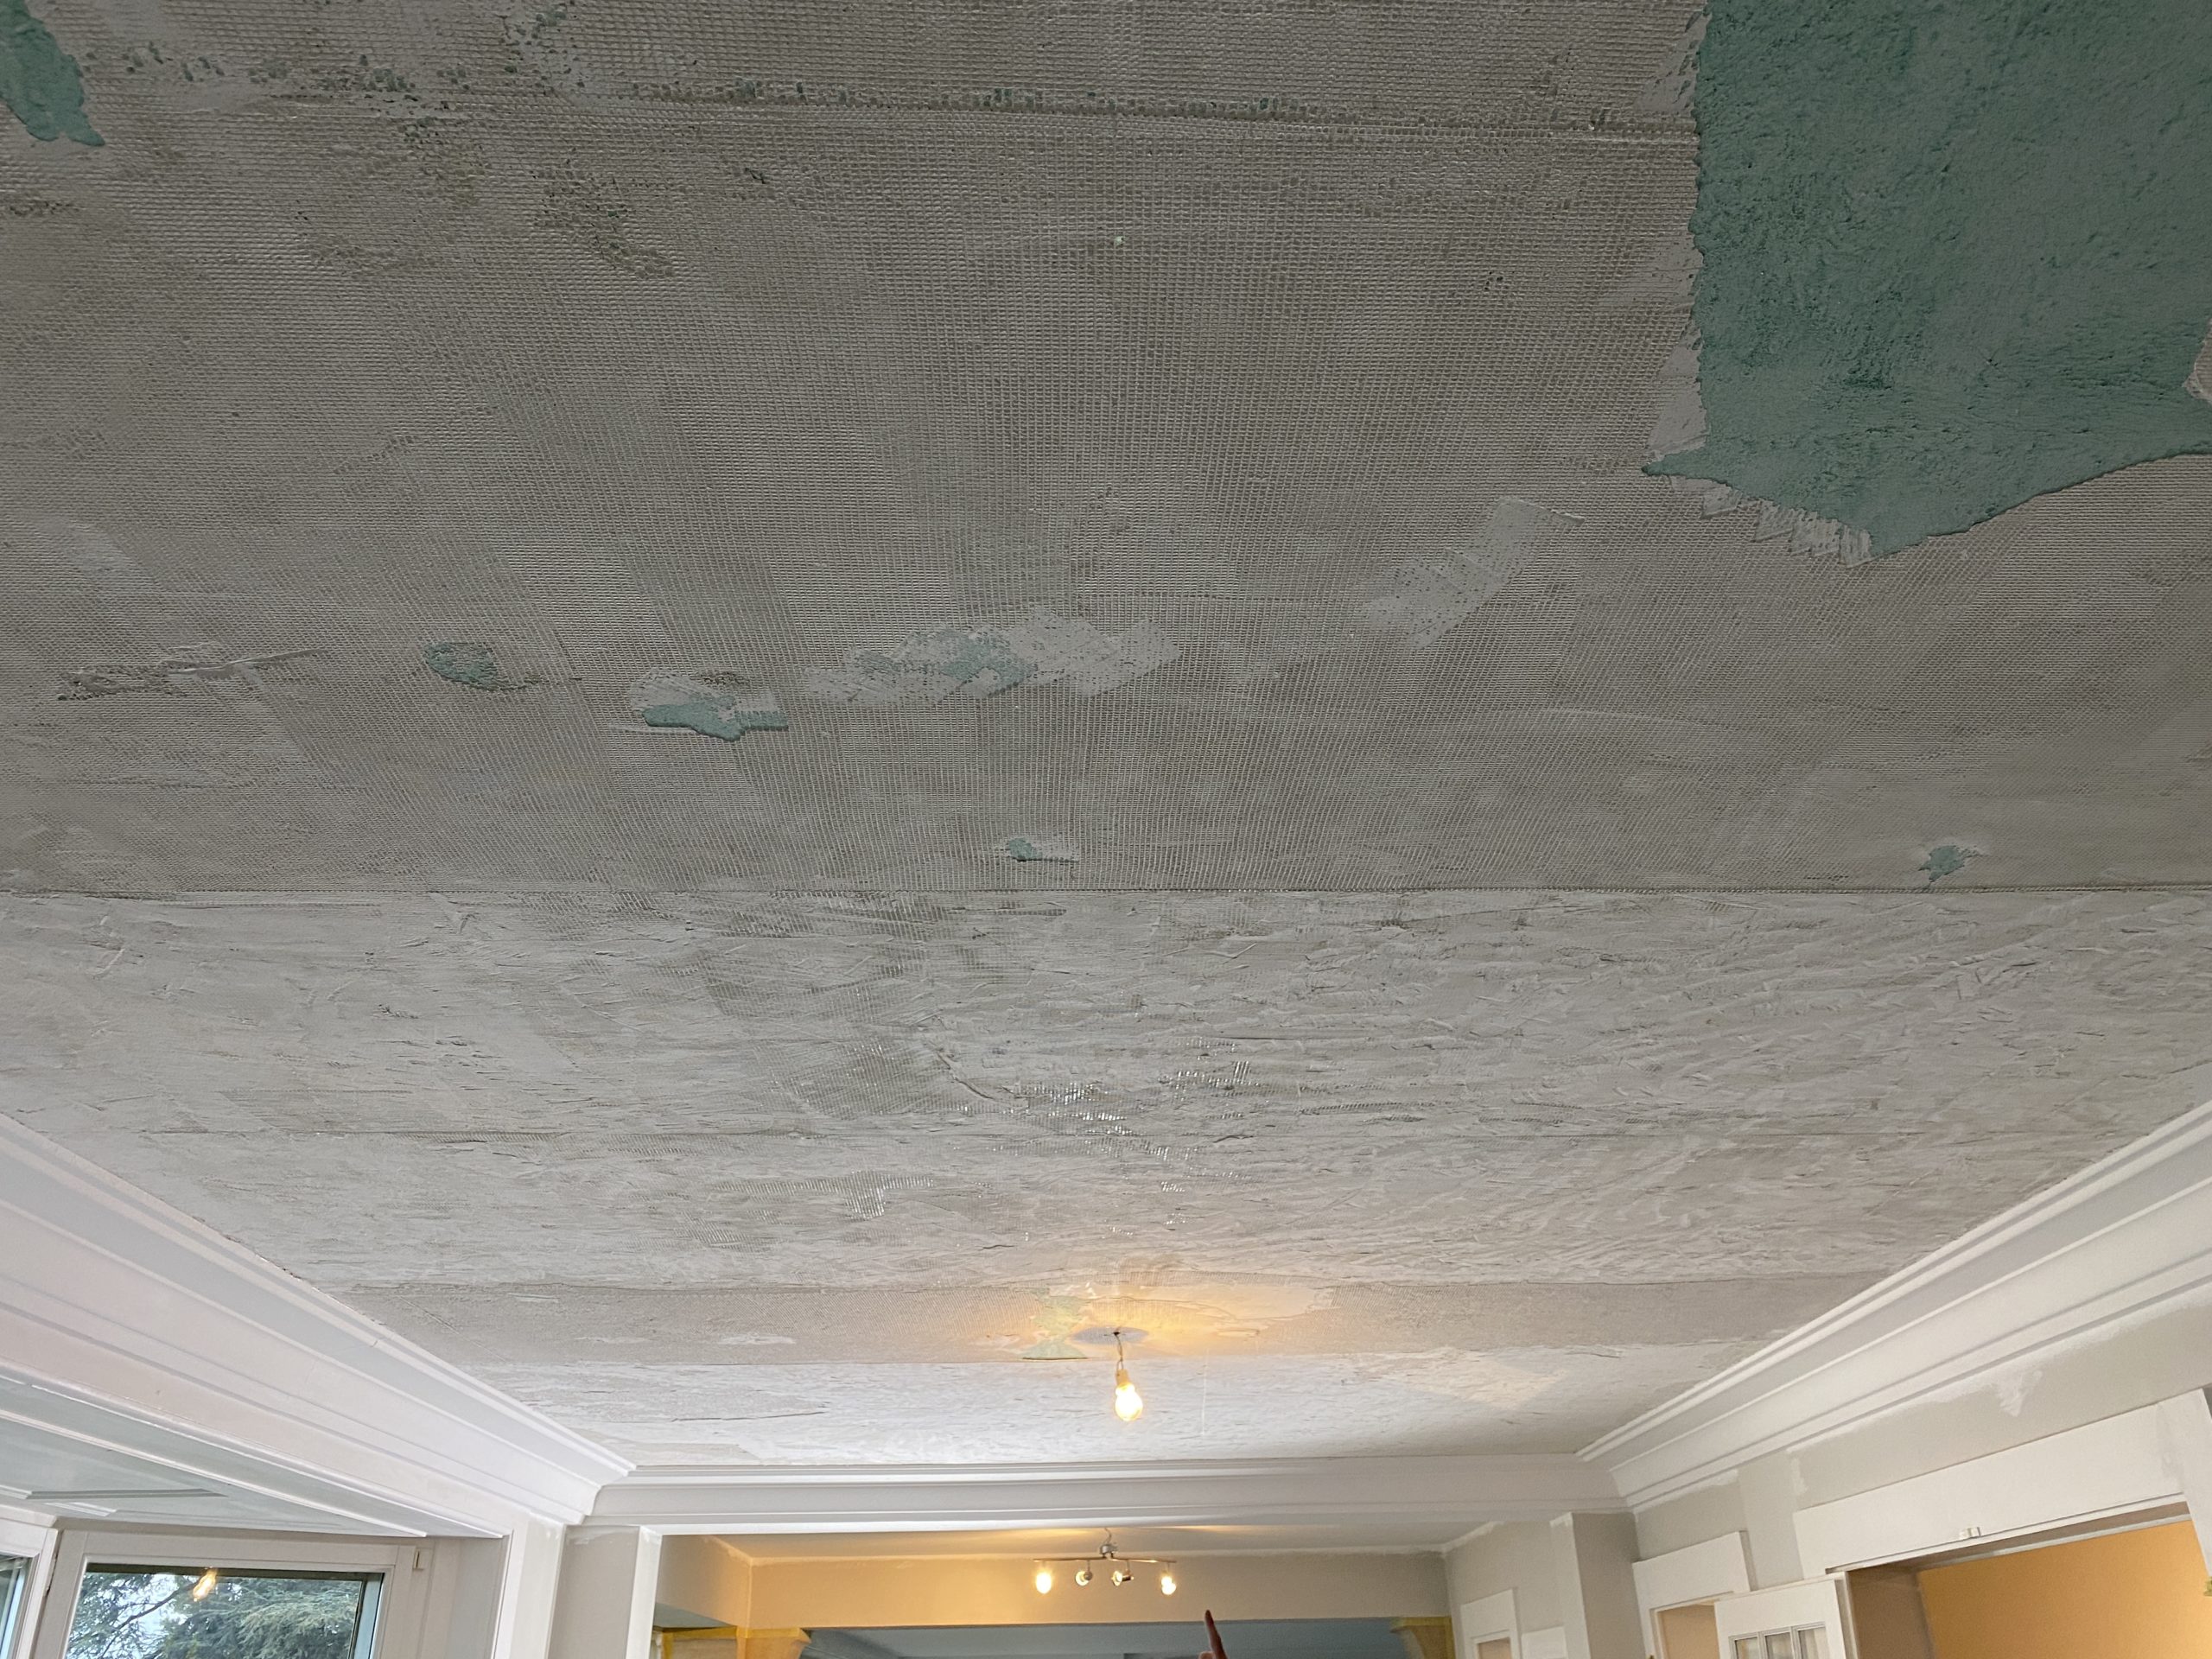 Le plafond à été entièrement gratté afin de le rénover entièrement en plâtre et peinture